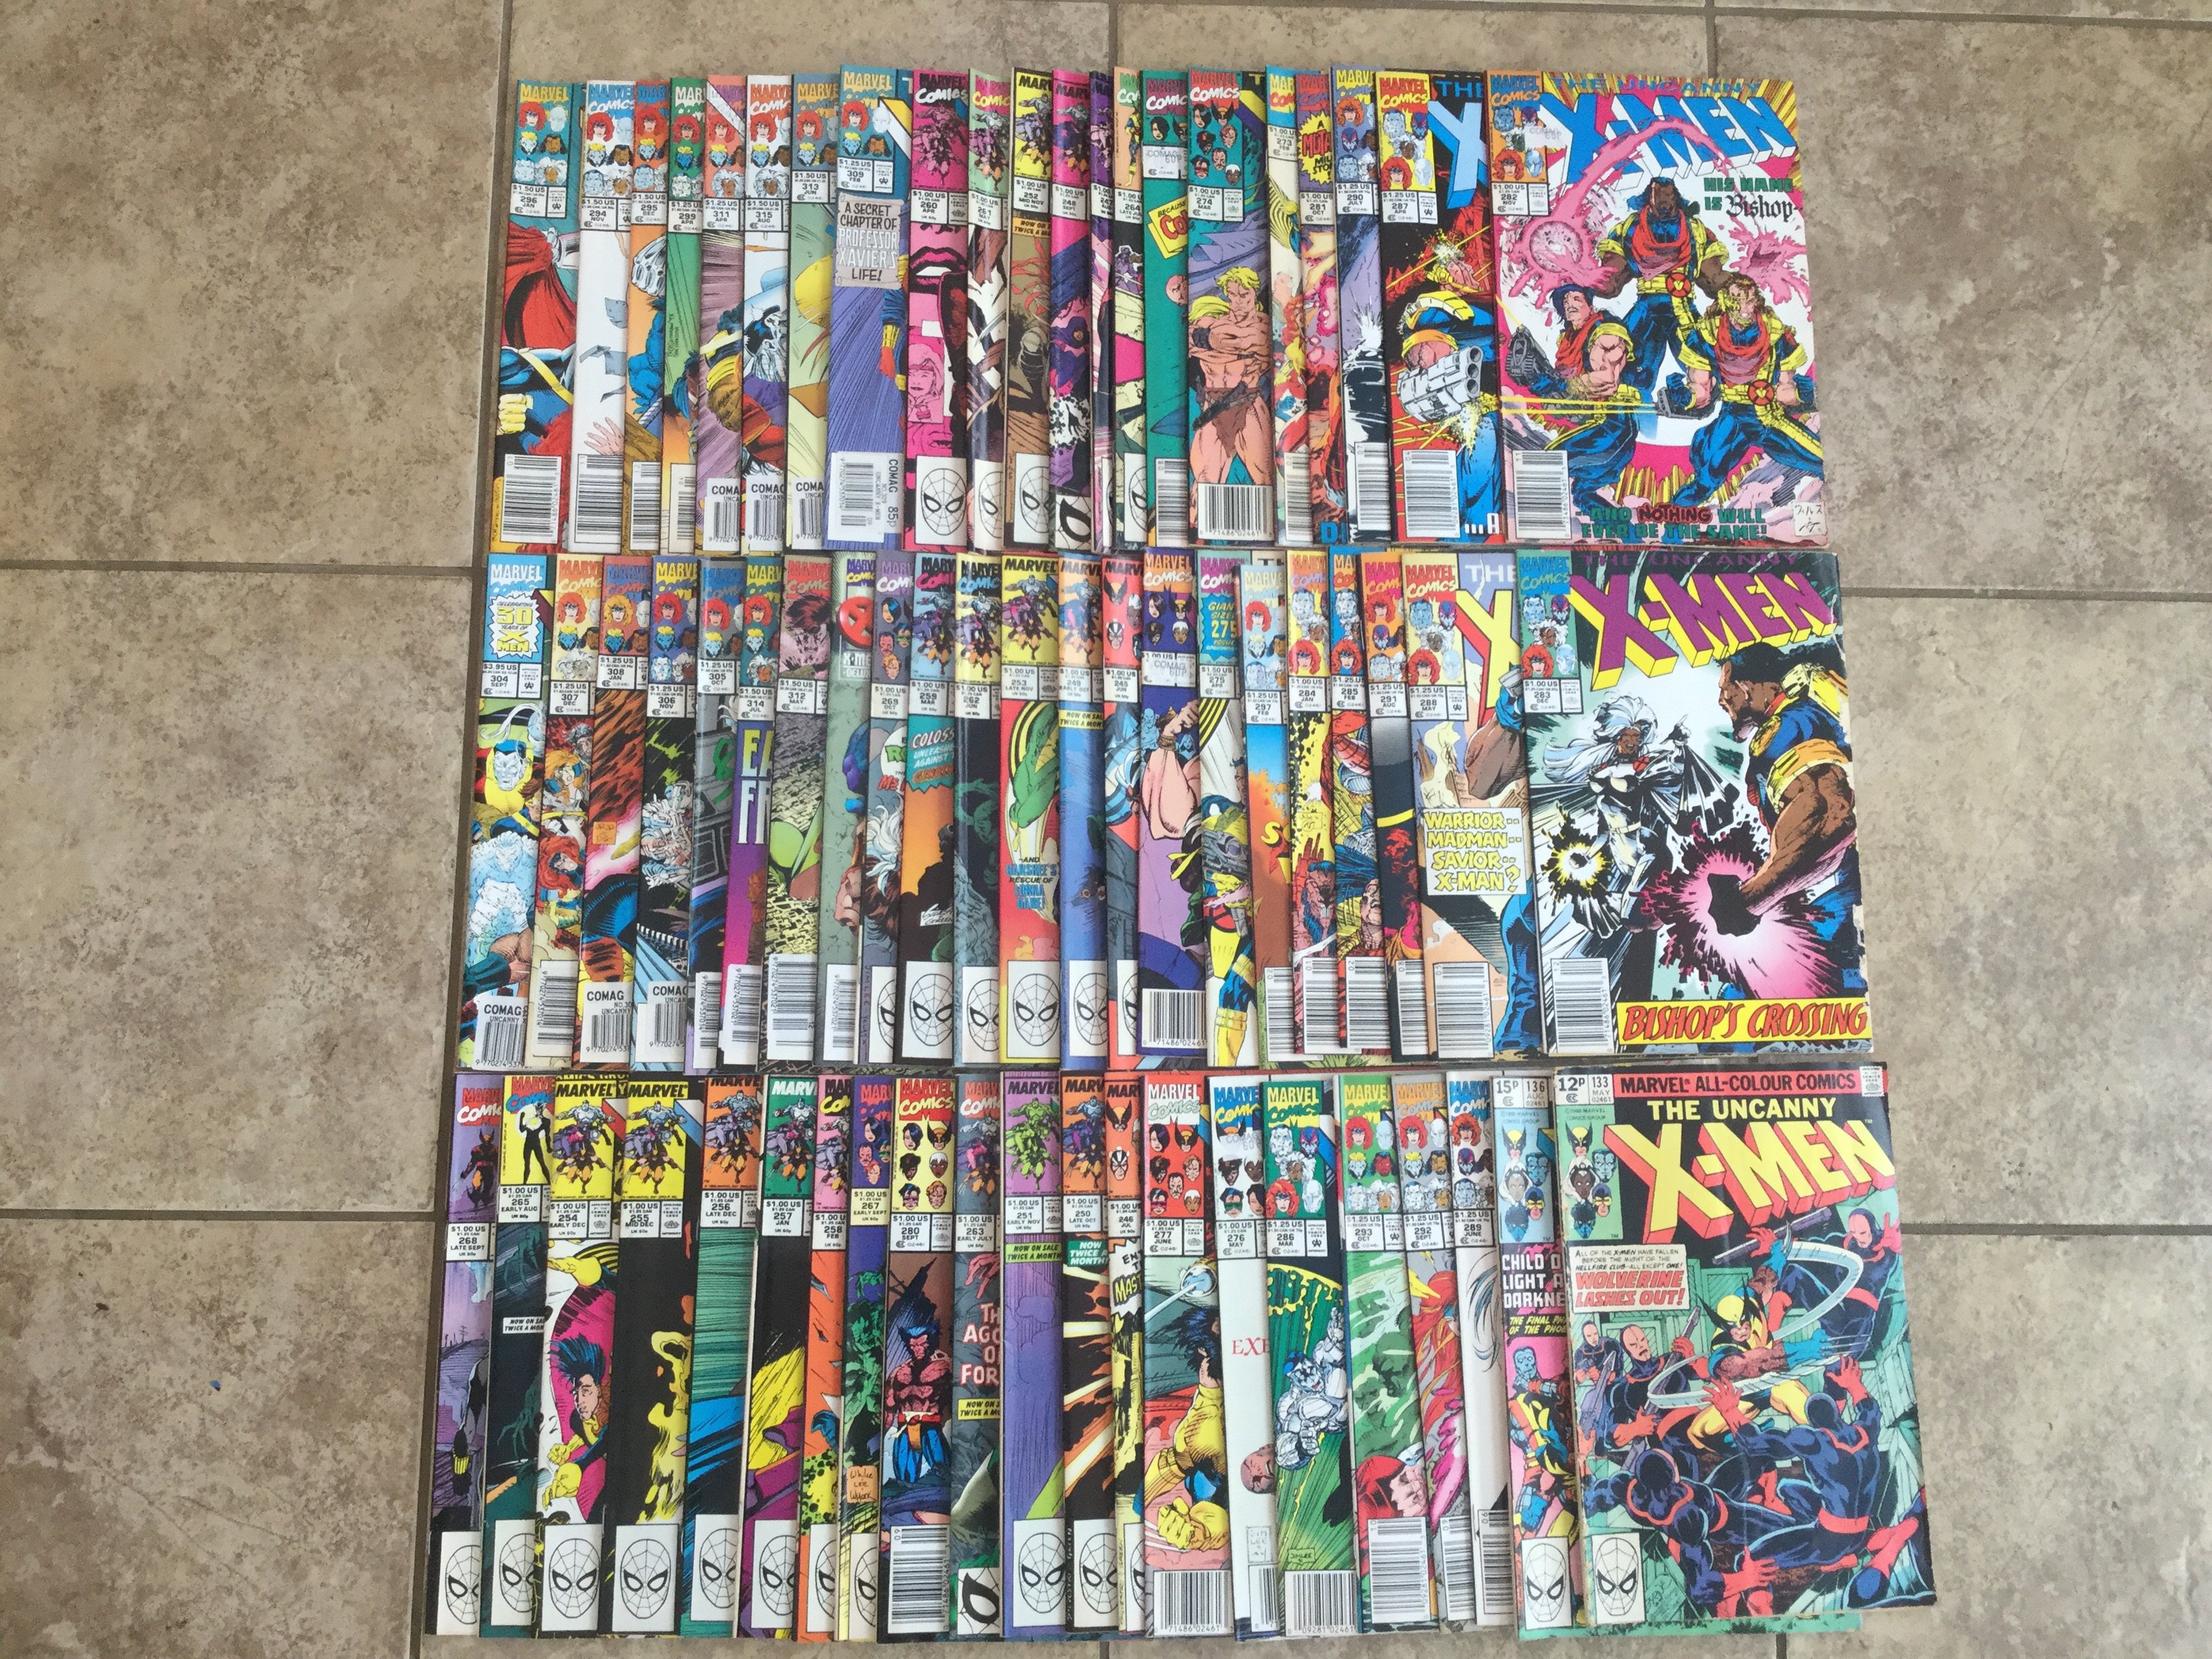 Approx 60 Uncanny X-Men comics including first cam